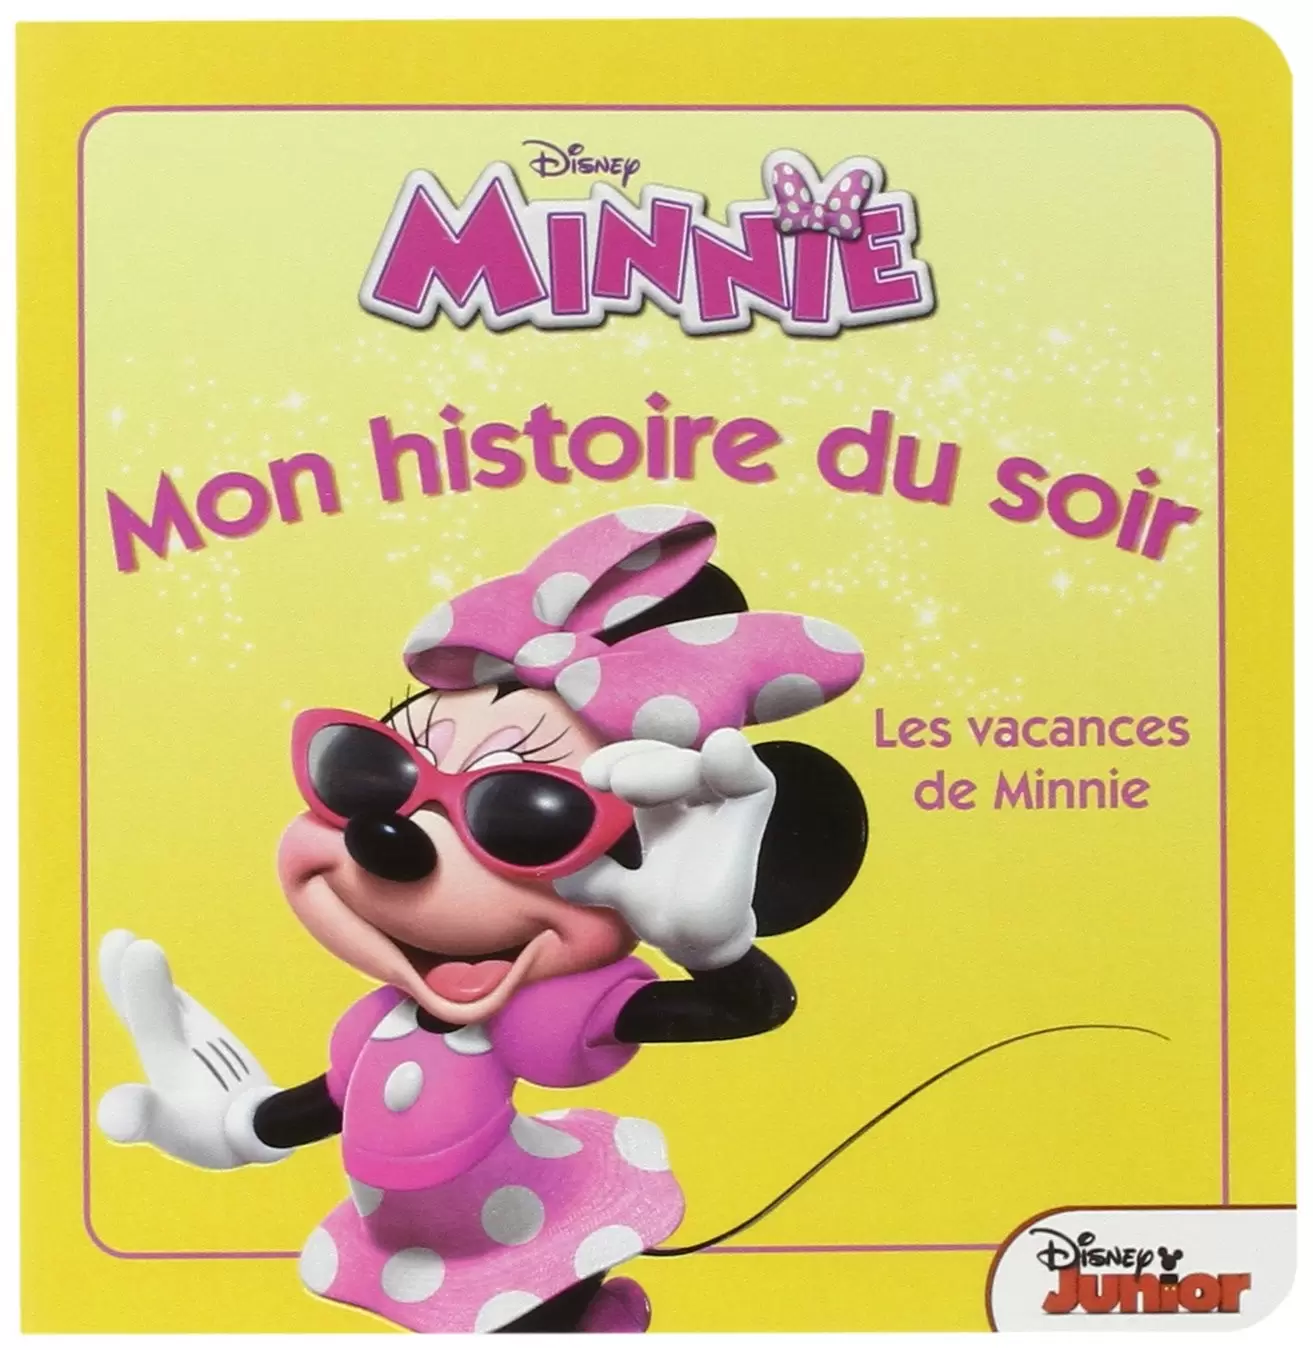 Mon histoire du soir - Minnie - Les vacances de minnie